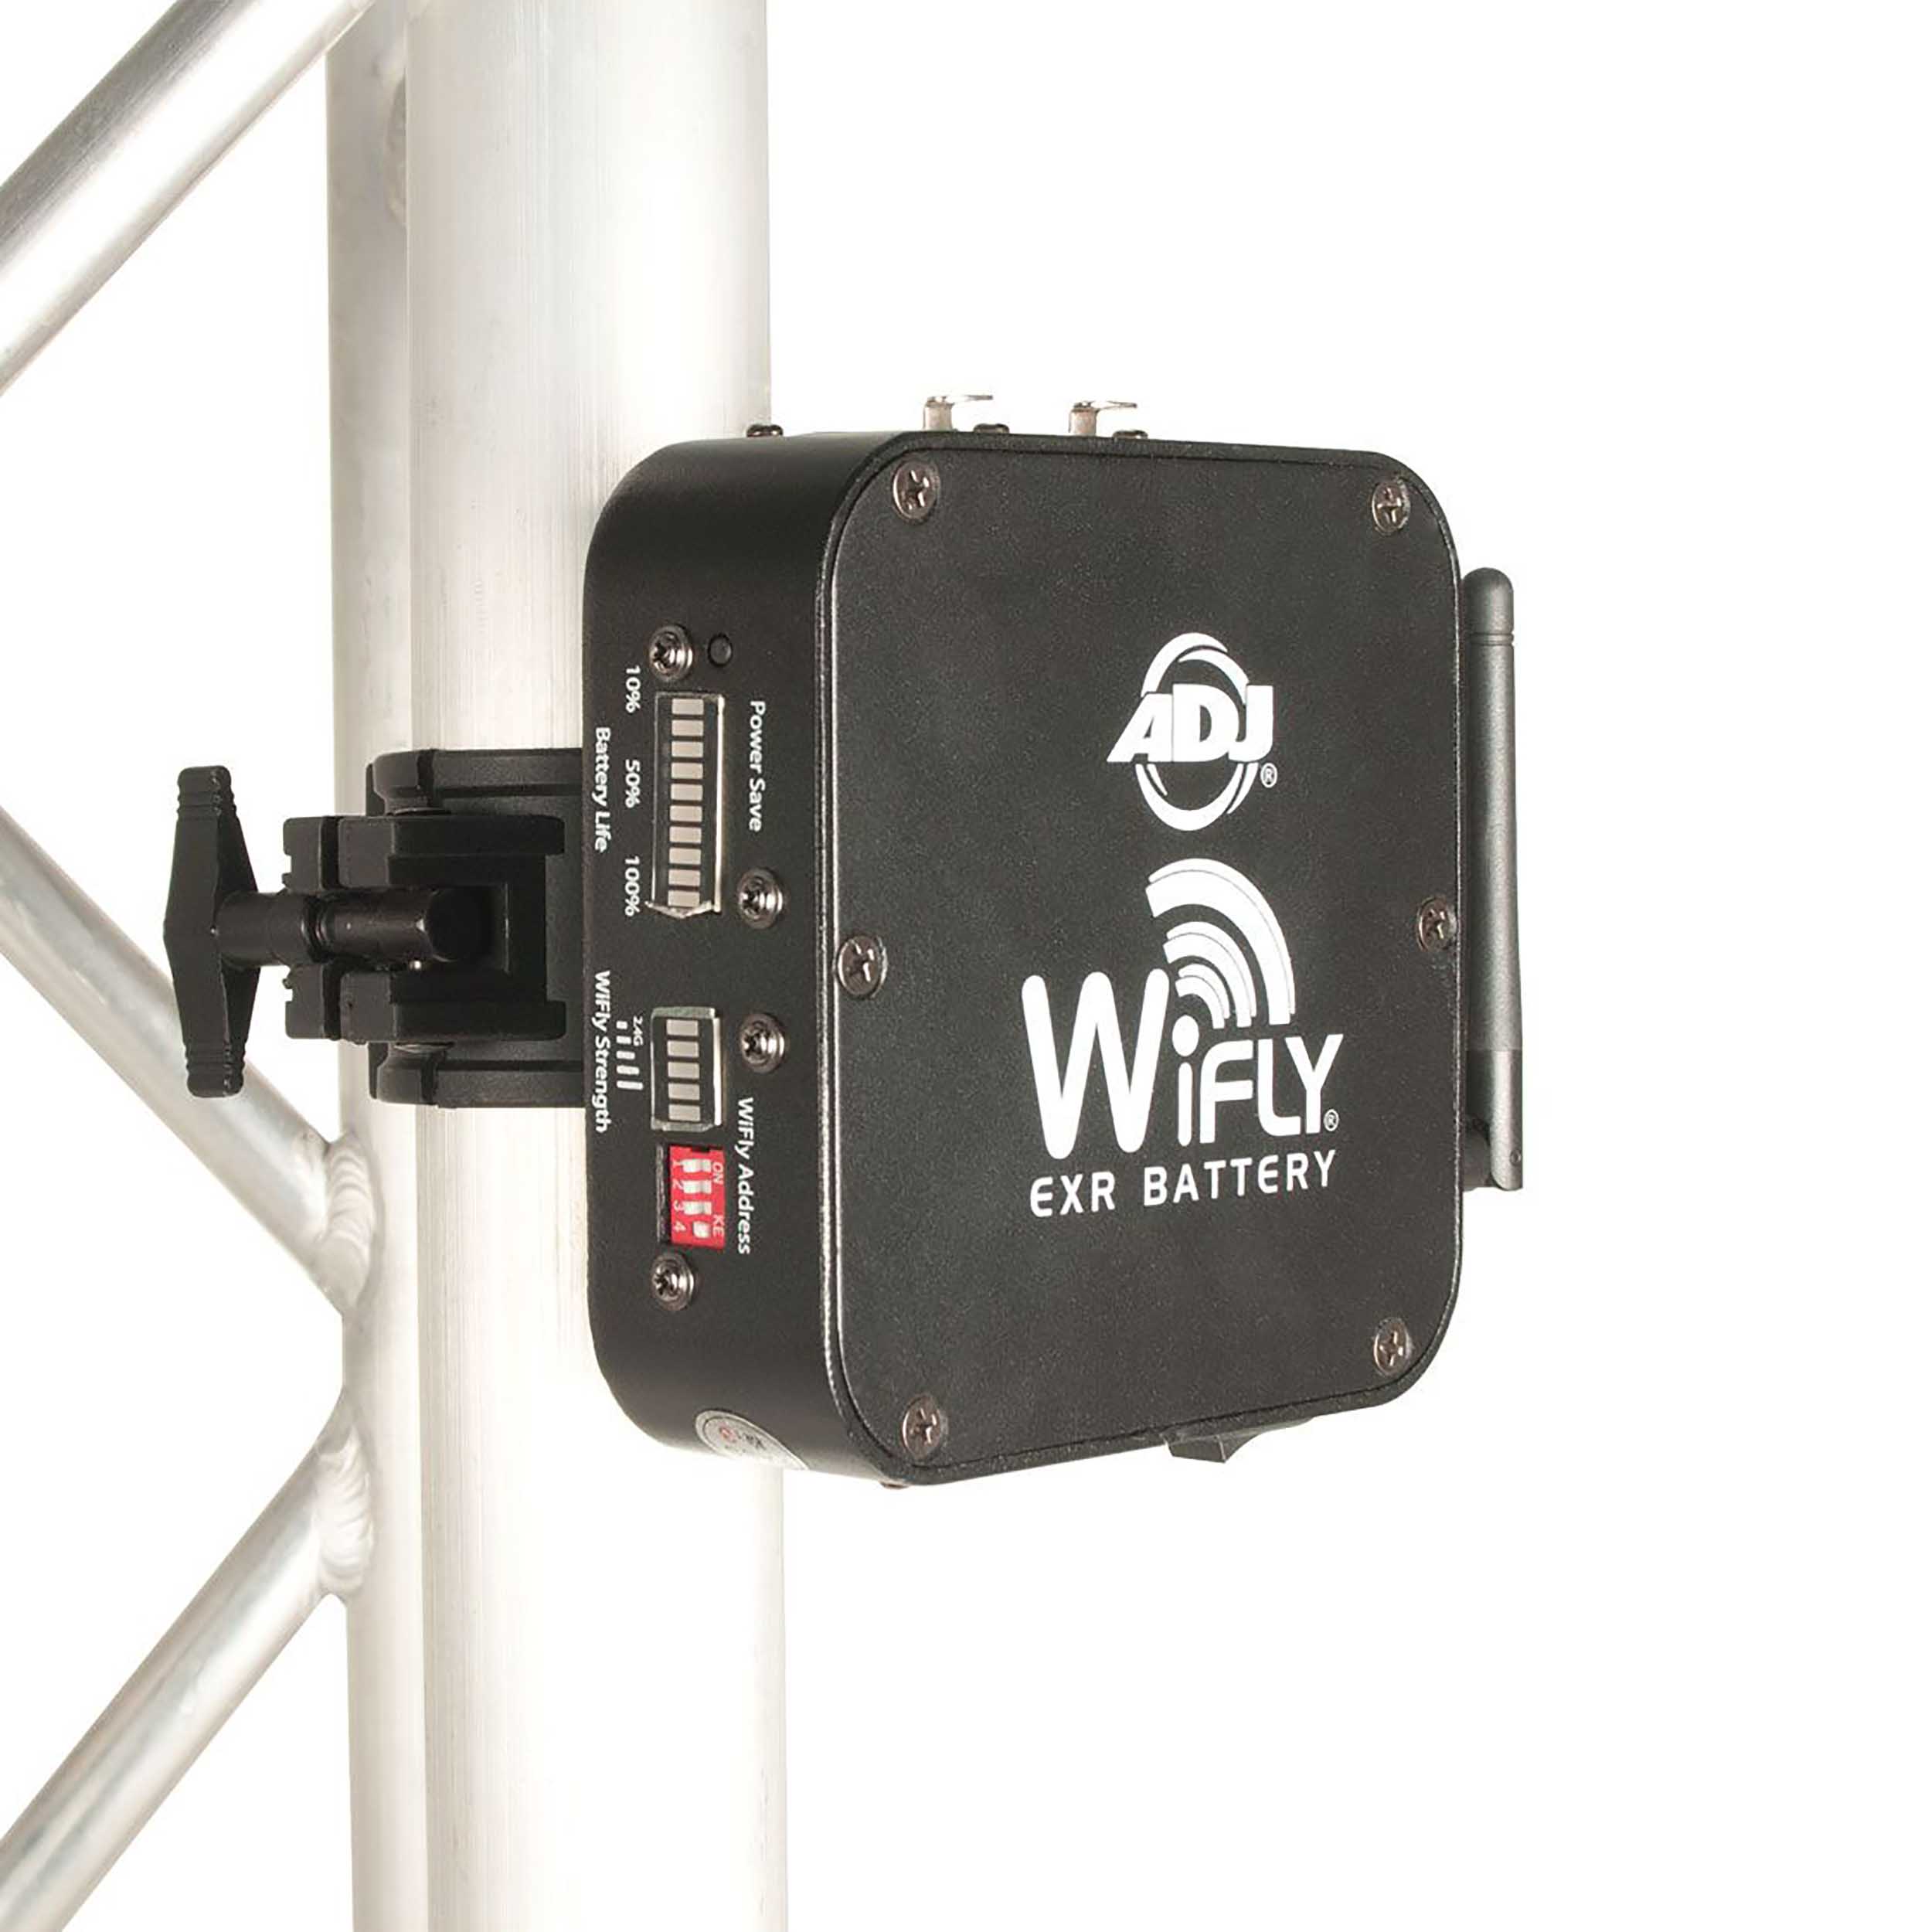 ADJ WIFLY EXR Battery, Wireless DMX Transmitter/Receiver by ADJ